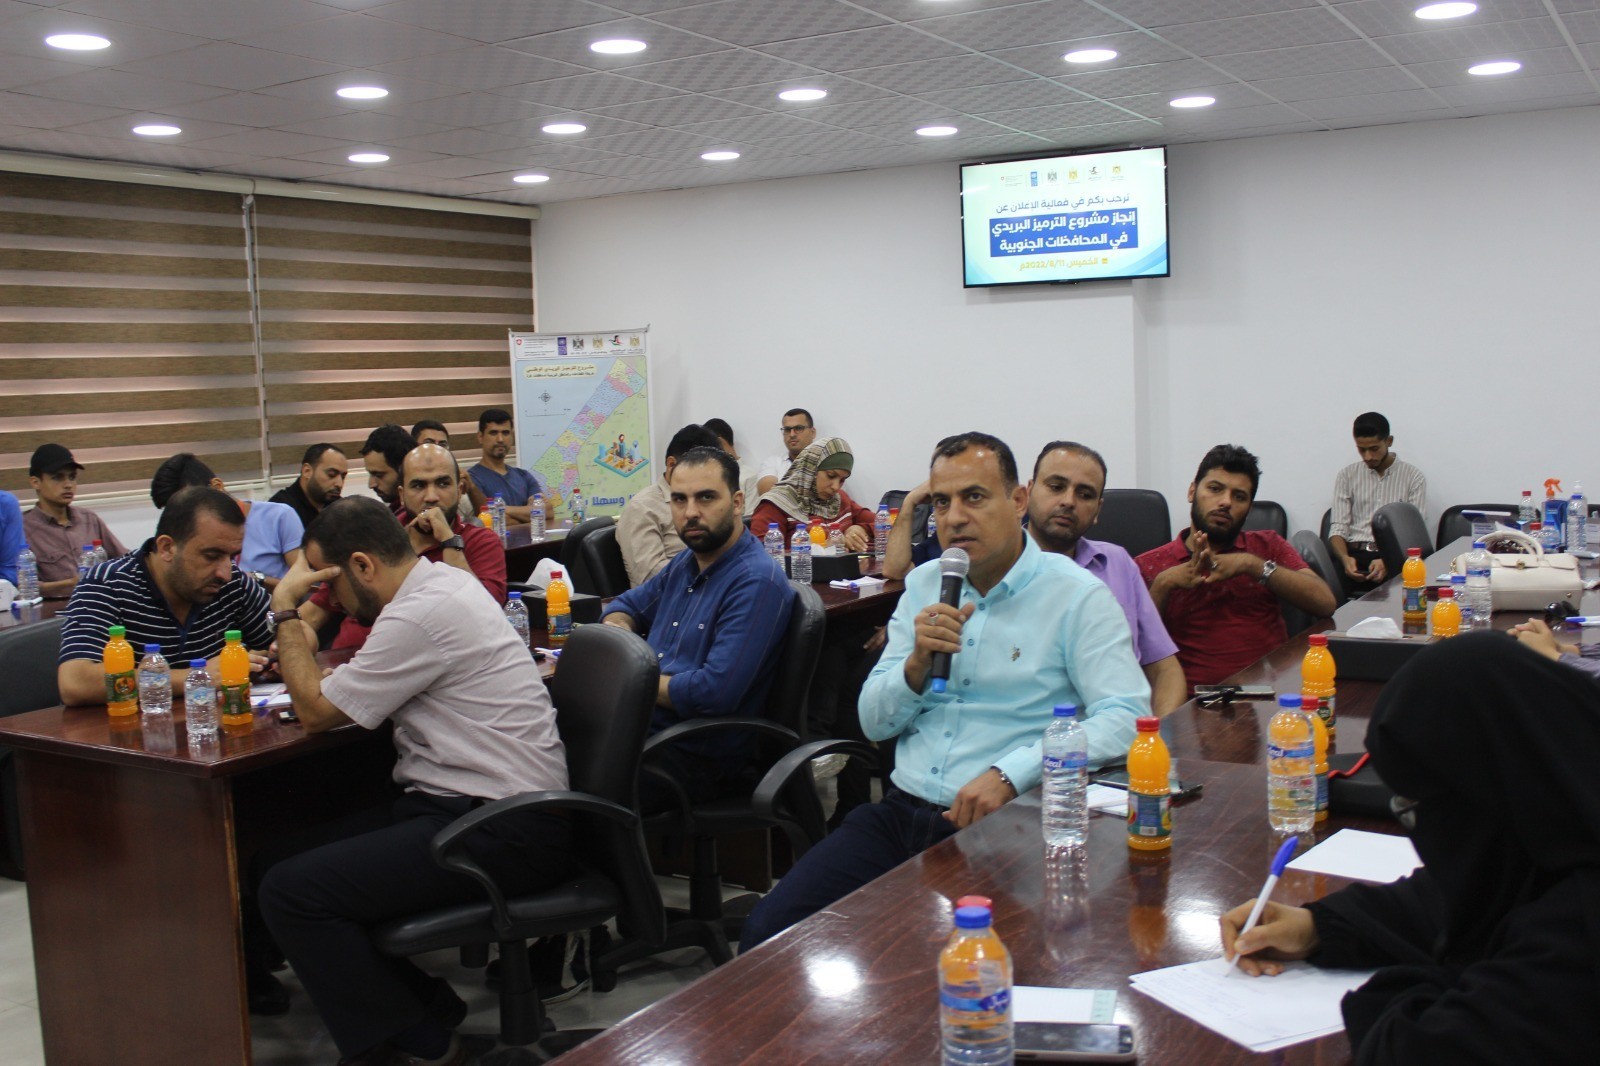 اتصالات غزة تُنجز مشروع الترميز البريدي في القطاع